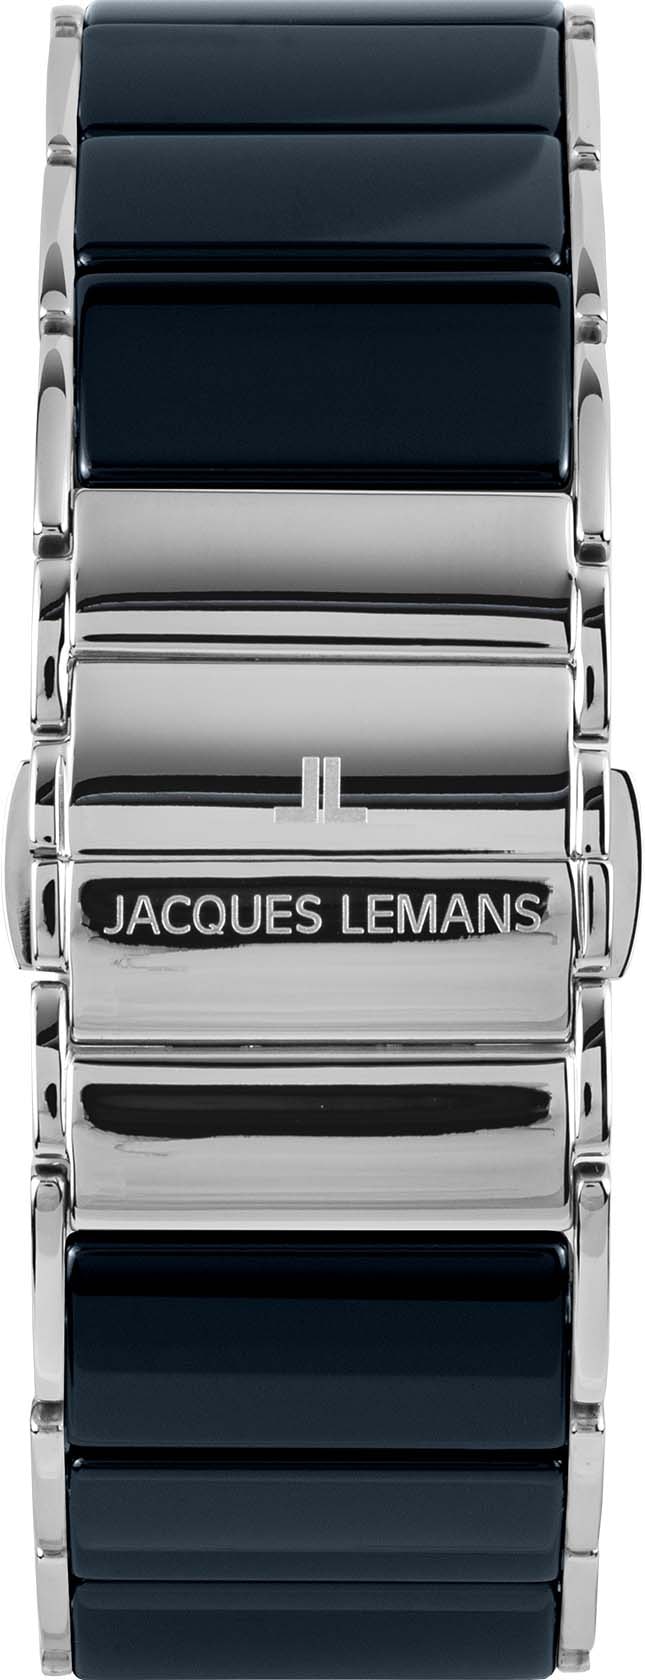 Jacques Lemans Chronograph »Dublin, 1-1941F«, Quarzuhr, Armbanduhr, Herrenuhr, Datum, Stoppfunktion